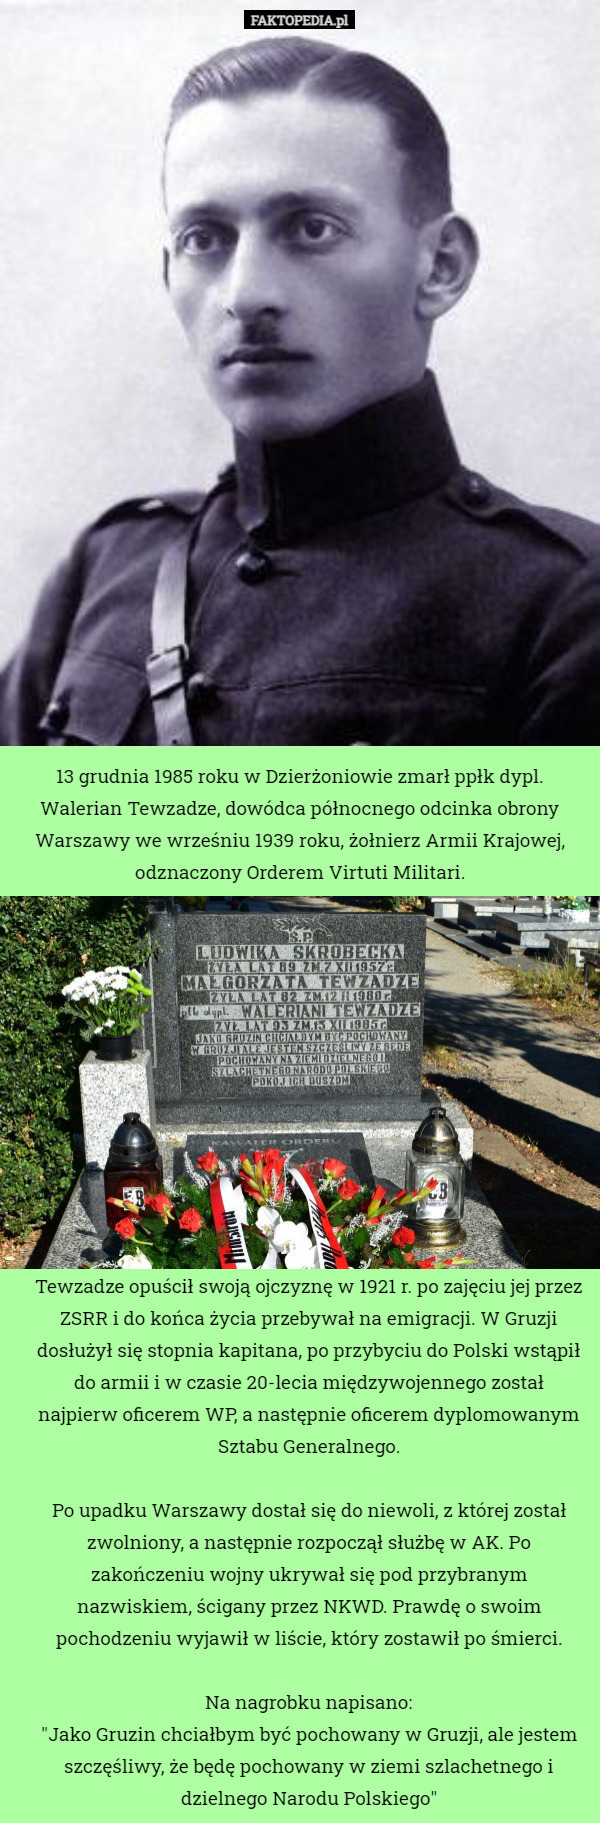 13 grudnia 1985 roku w Dzierżoniowie zmarł ppłk dypl. Walerian Tewzadze, dowódca północnego odcinka obrony Warszawy we wrześniu 1939 roku, żołnierz Armii Krajowej, odznaczony Orderem Virtuti Militari. Tewzadze opuścił swoją ojczyznę w 1921 r. po zajęciu jej przez ZSRR i do końca życia przebywał na emigracji. W Gruzji dosłużył się stopnia kapitana, po przybyciu do Polski wstąpił do armii i w czasie 20-lecia międzywojennego został najpierw oficerem WP, a następnie oficerem dyplomowanym Sztabu Generalnego.

Po upadku Warszawy dostał się do niewoli, z której został zwolniony, a następnie rozpoczął służbę w AK. Po zakończeniu wojny ukrywał się pod przybranym nazwiskiem, ścigany przez NKWD. Prawdę o swoim pochodzeniu wyjawił w liście, który zostawił po śmierci.

Na nagrobku napisano:
"Jako Gruzin chciałbym być pochowany w Gruzji, ale jestem szczęśliwy, że będę pochowany w ziemi szlachetnego i dzielnego Narodu Polskiego" 